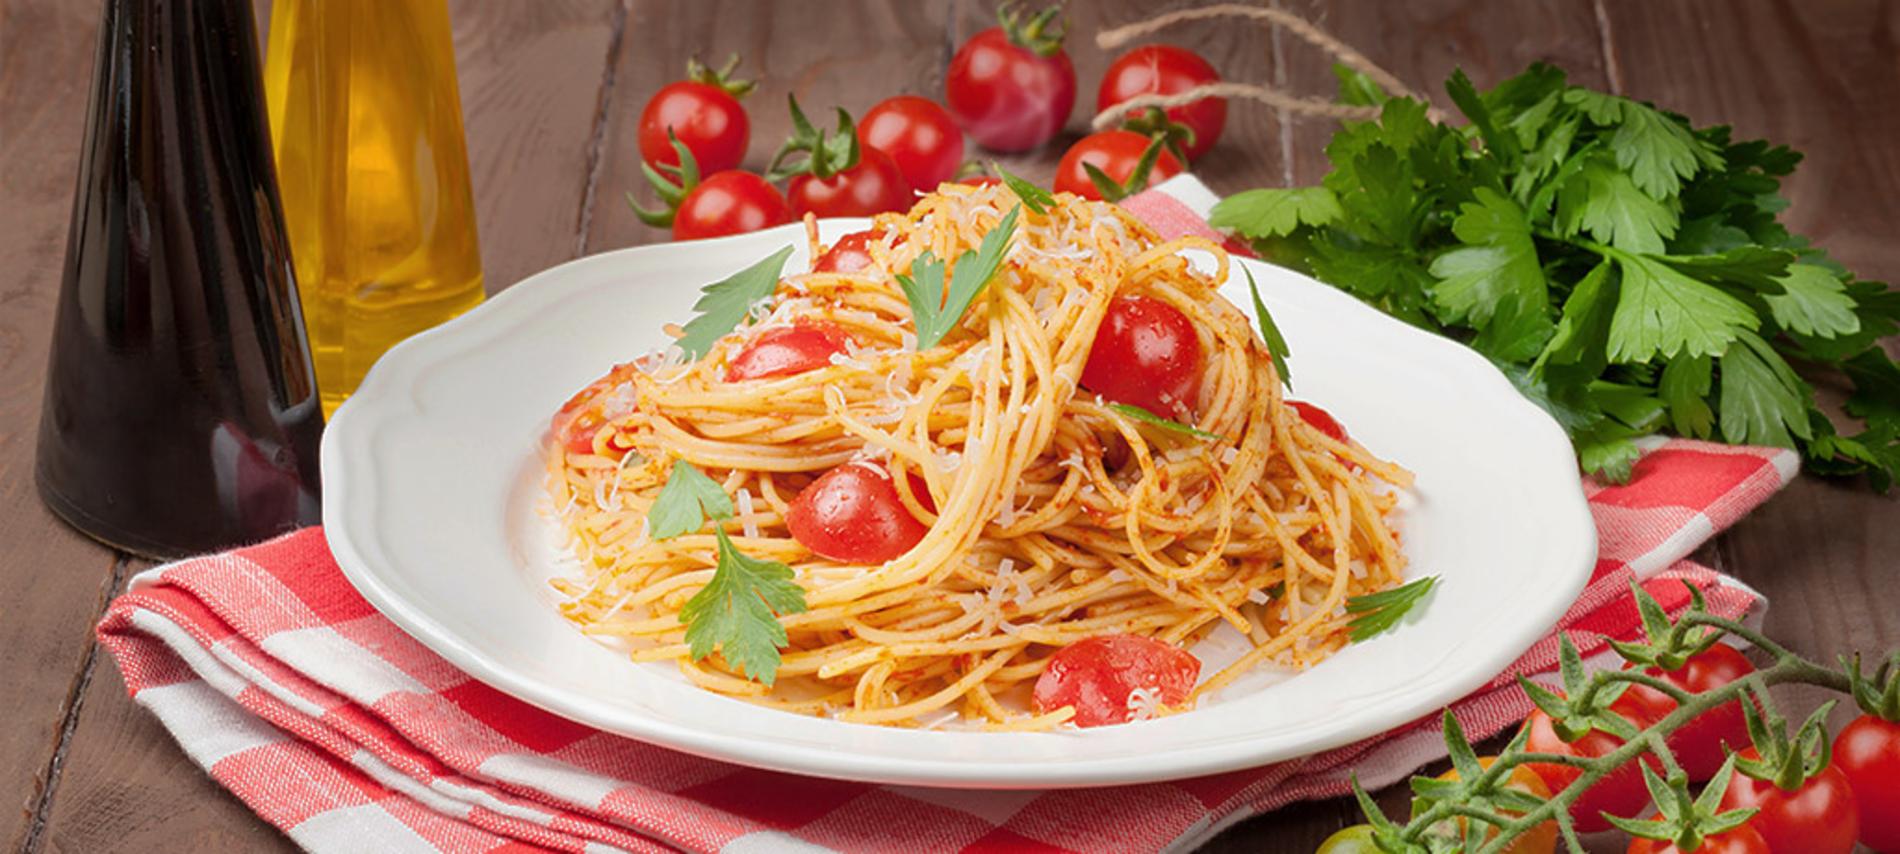 Receta de Spaghetti con verduras mixtas